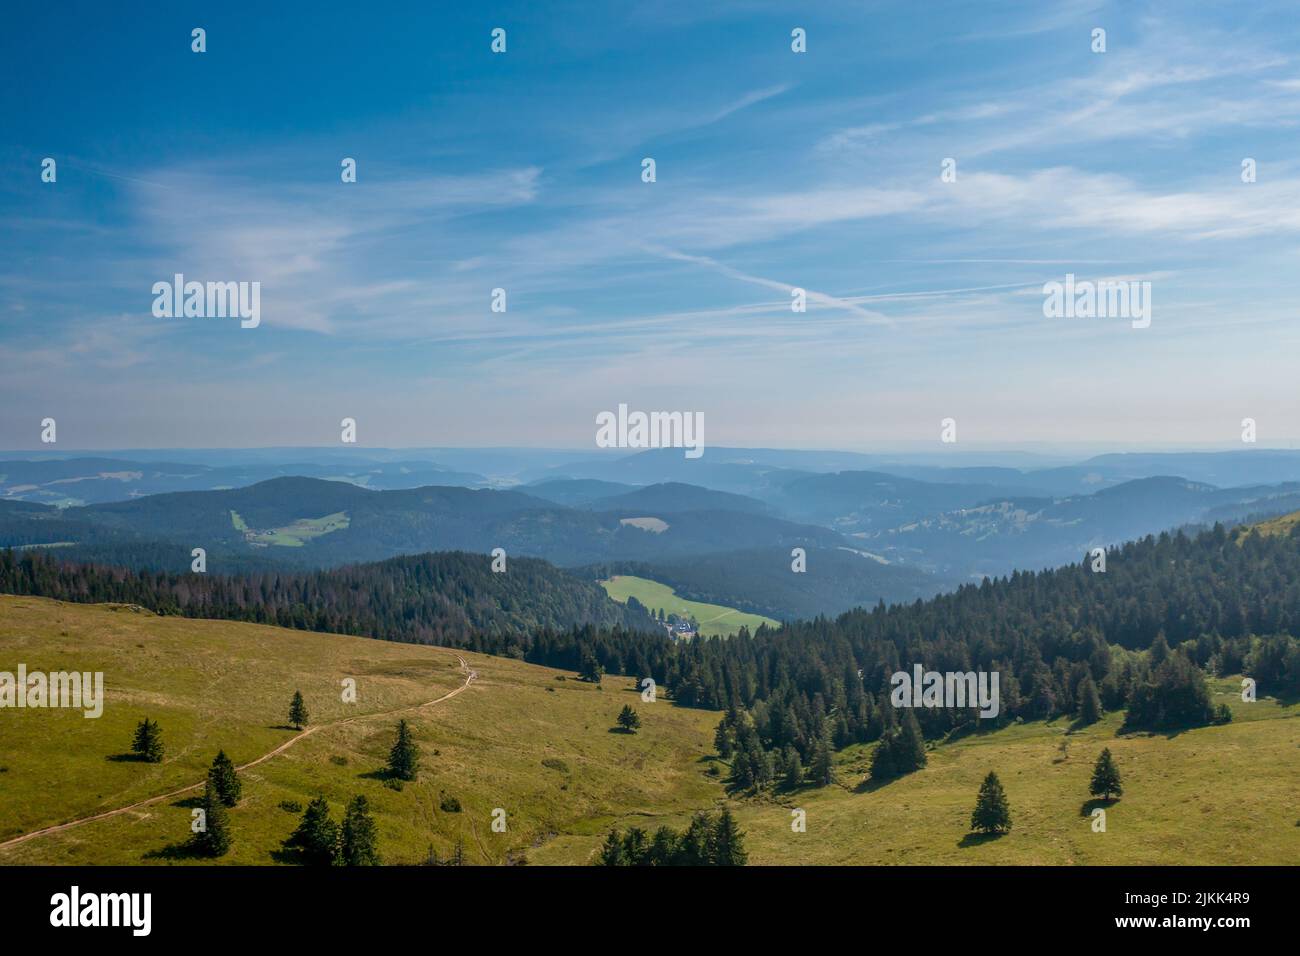 Eine schöne Aussicht auf eine grüne Landschaft mit Hügeln unter dem blauen Himmel Stockfoto